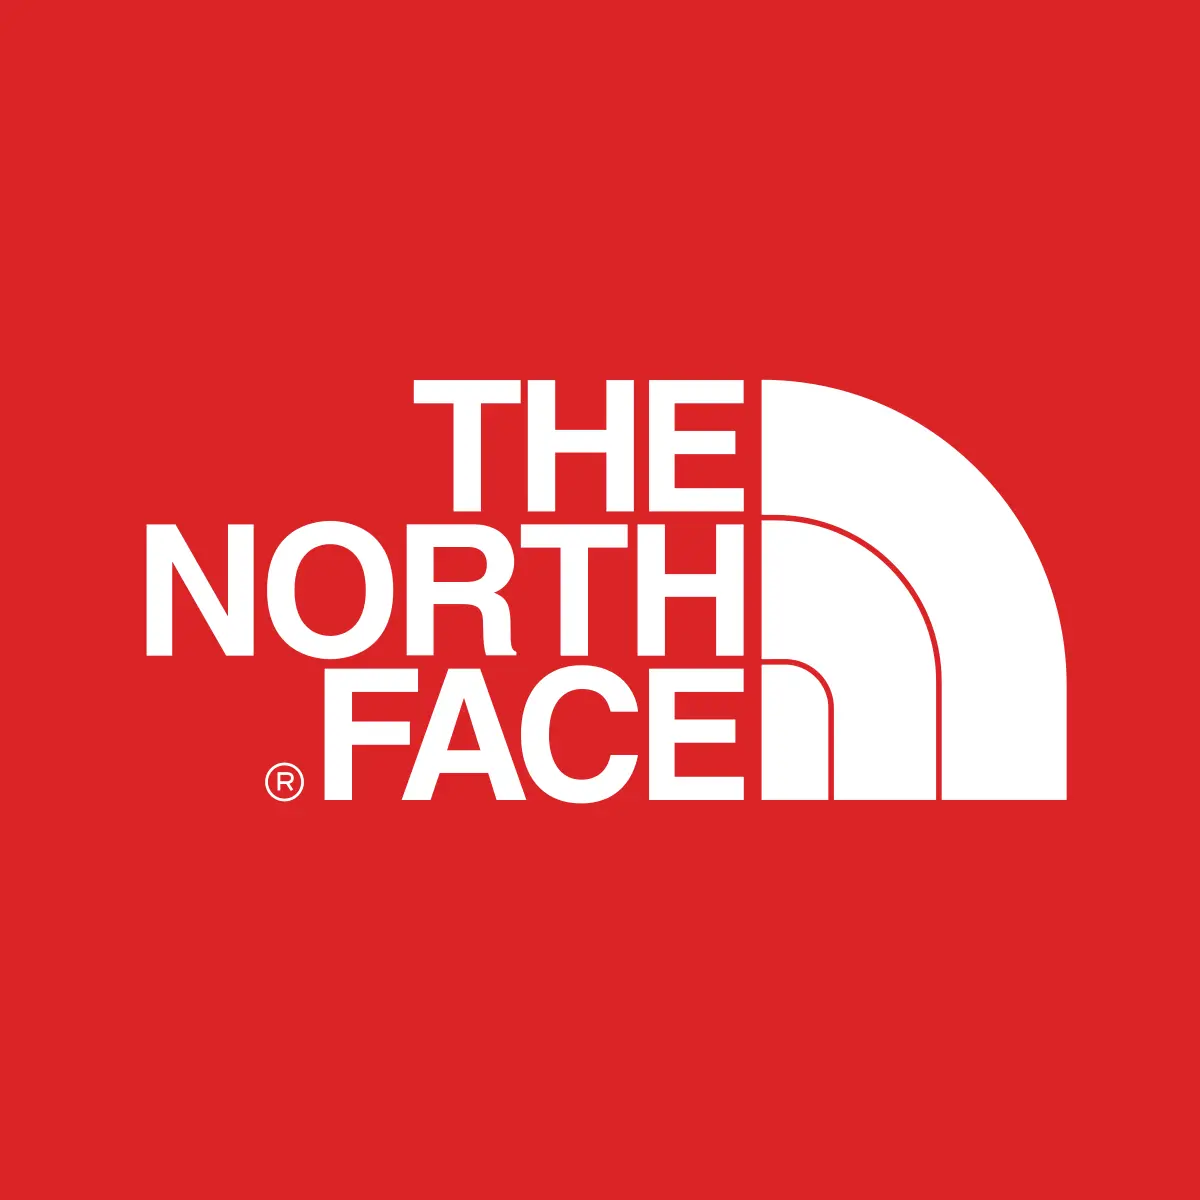 douglas tompkins marca de ropa - Dónde se fabrica la marca North Face